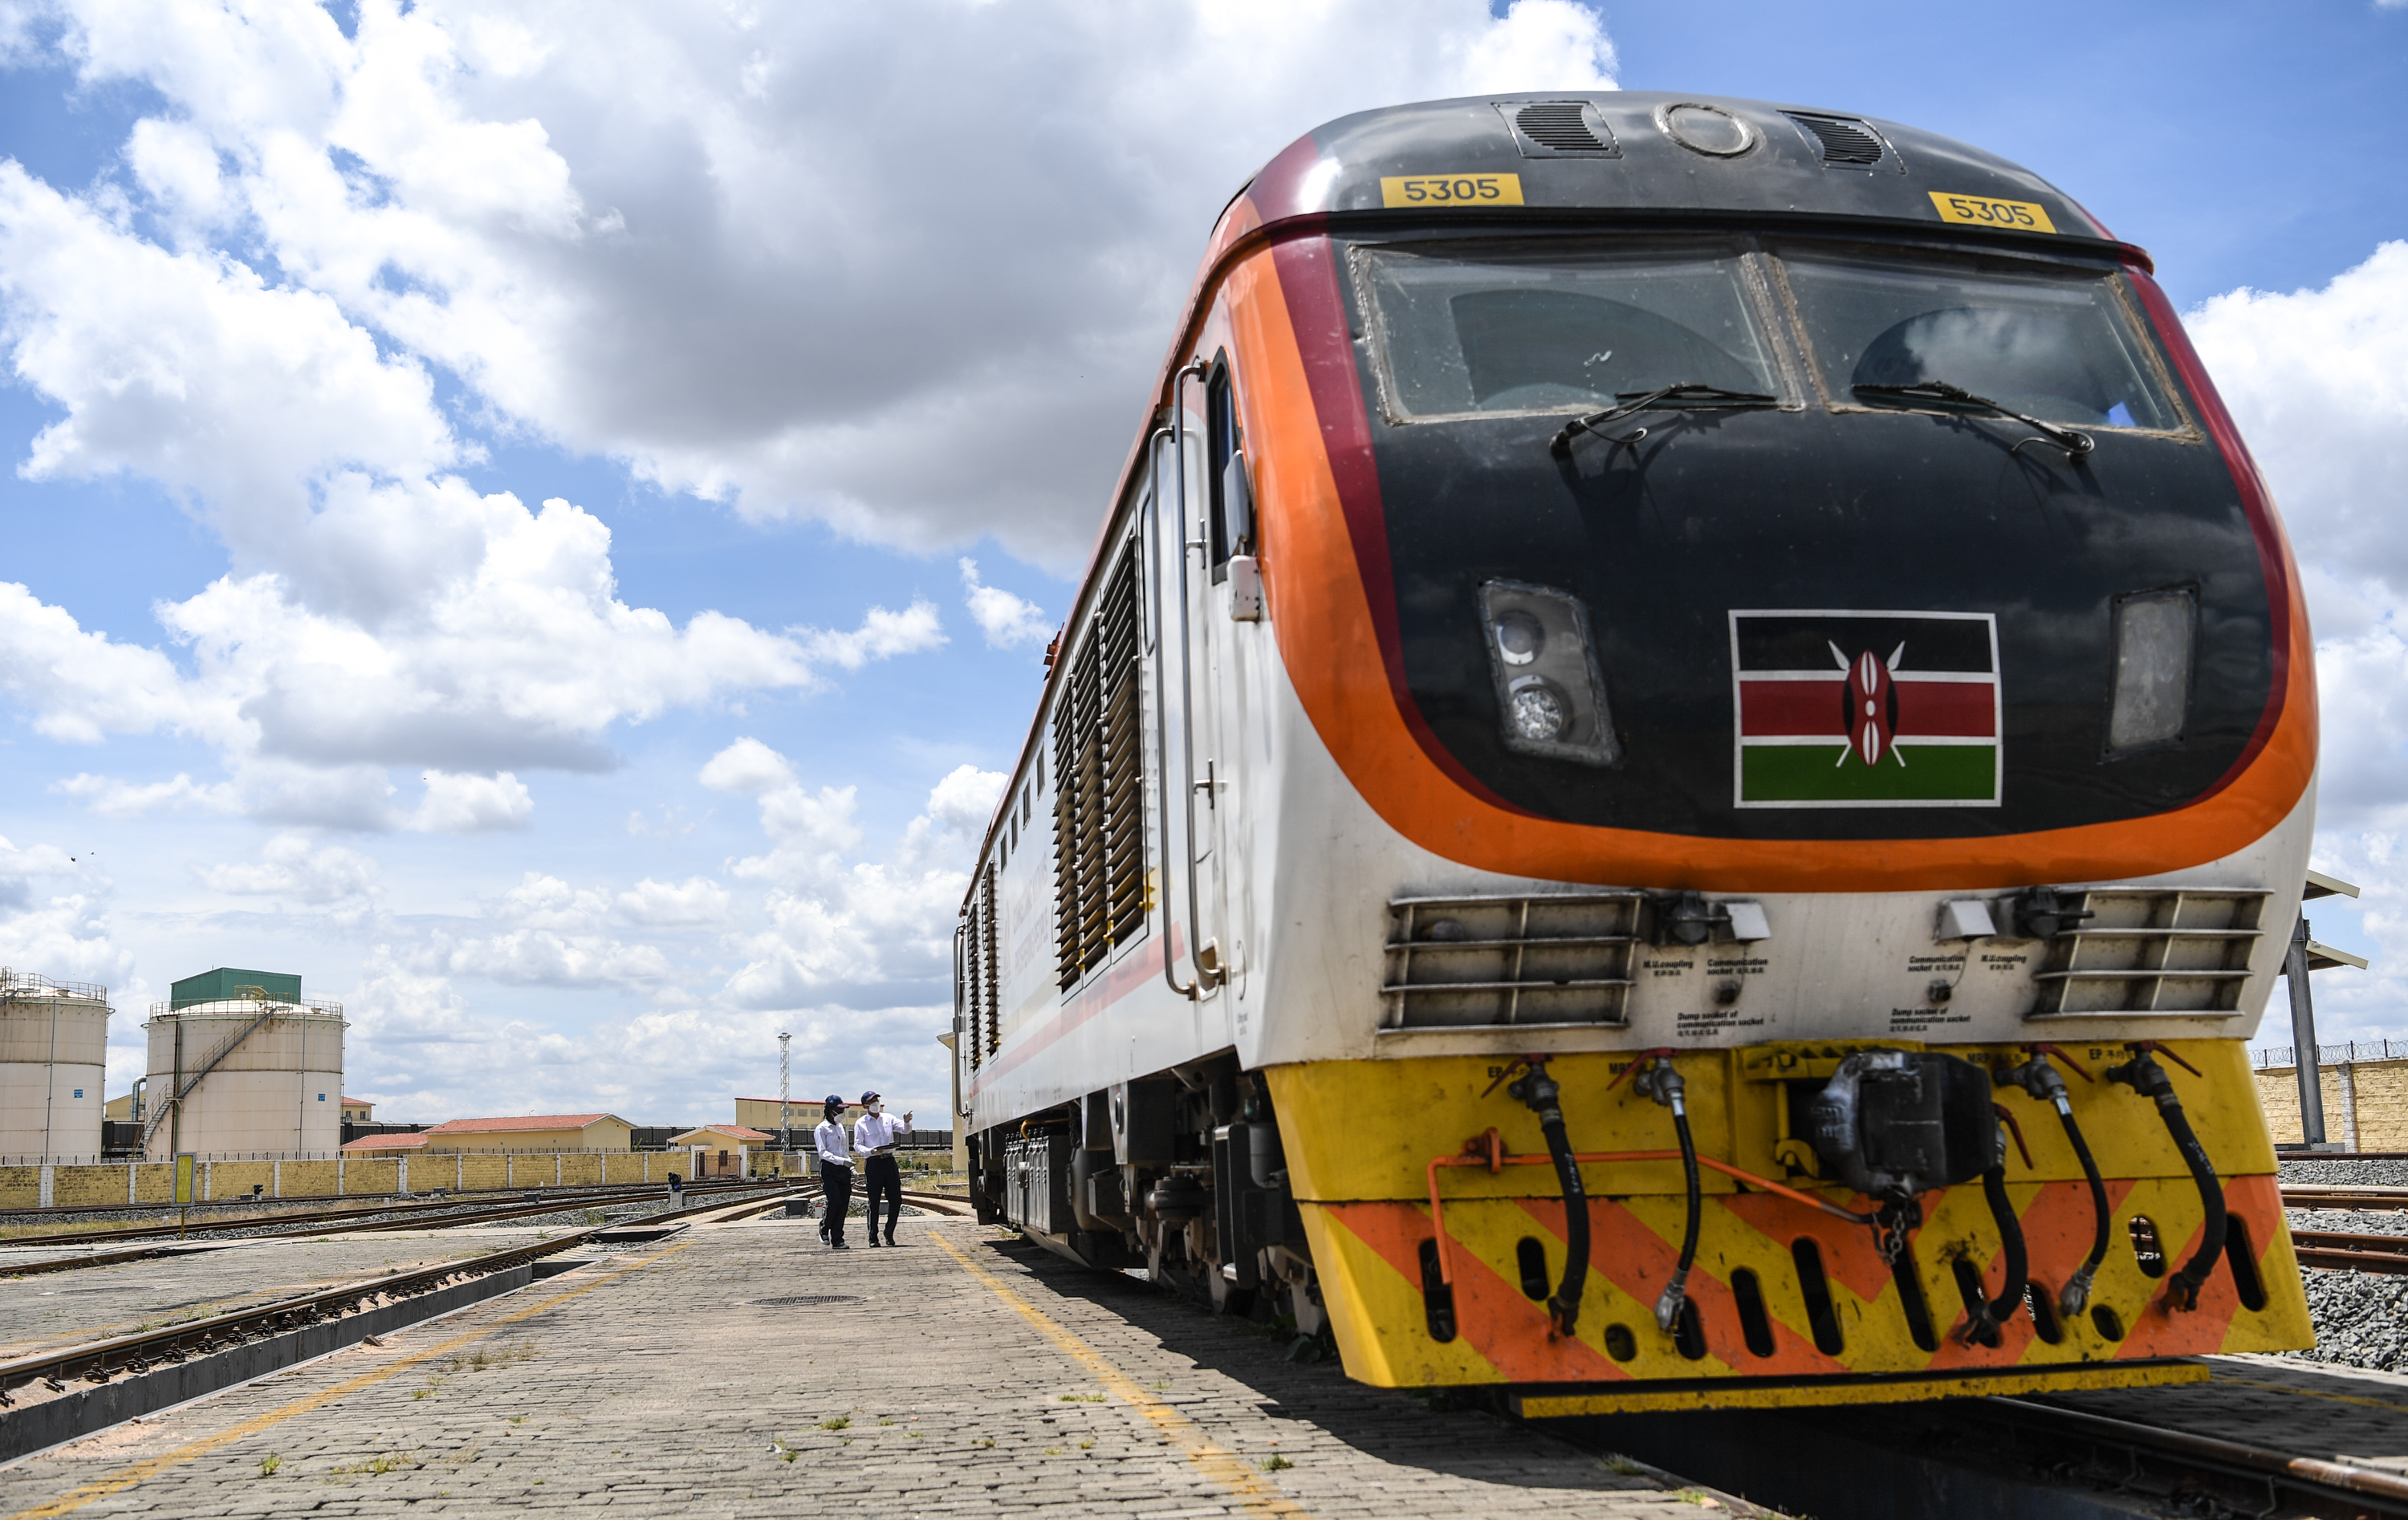 你好非洲我相信肯尼亚的铁路网以后会像中国铁路网一样越来越好